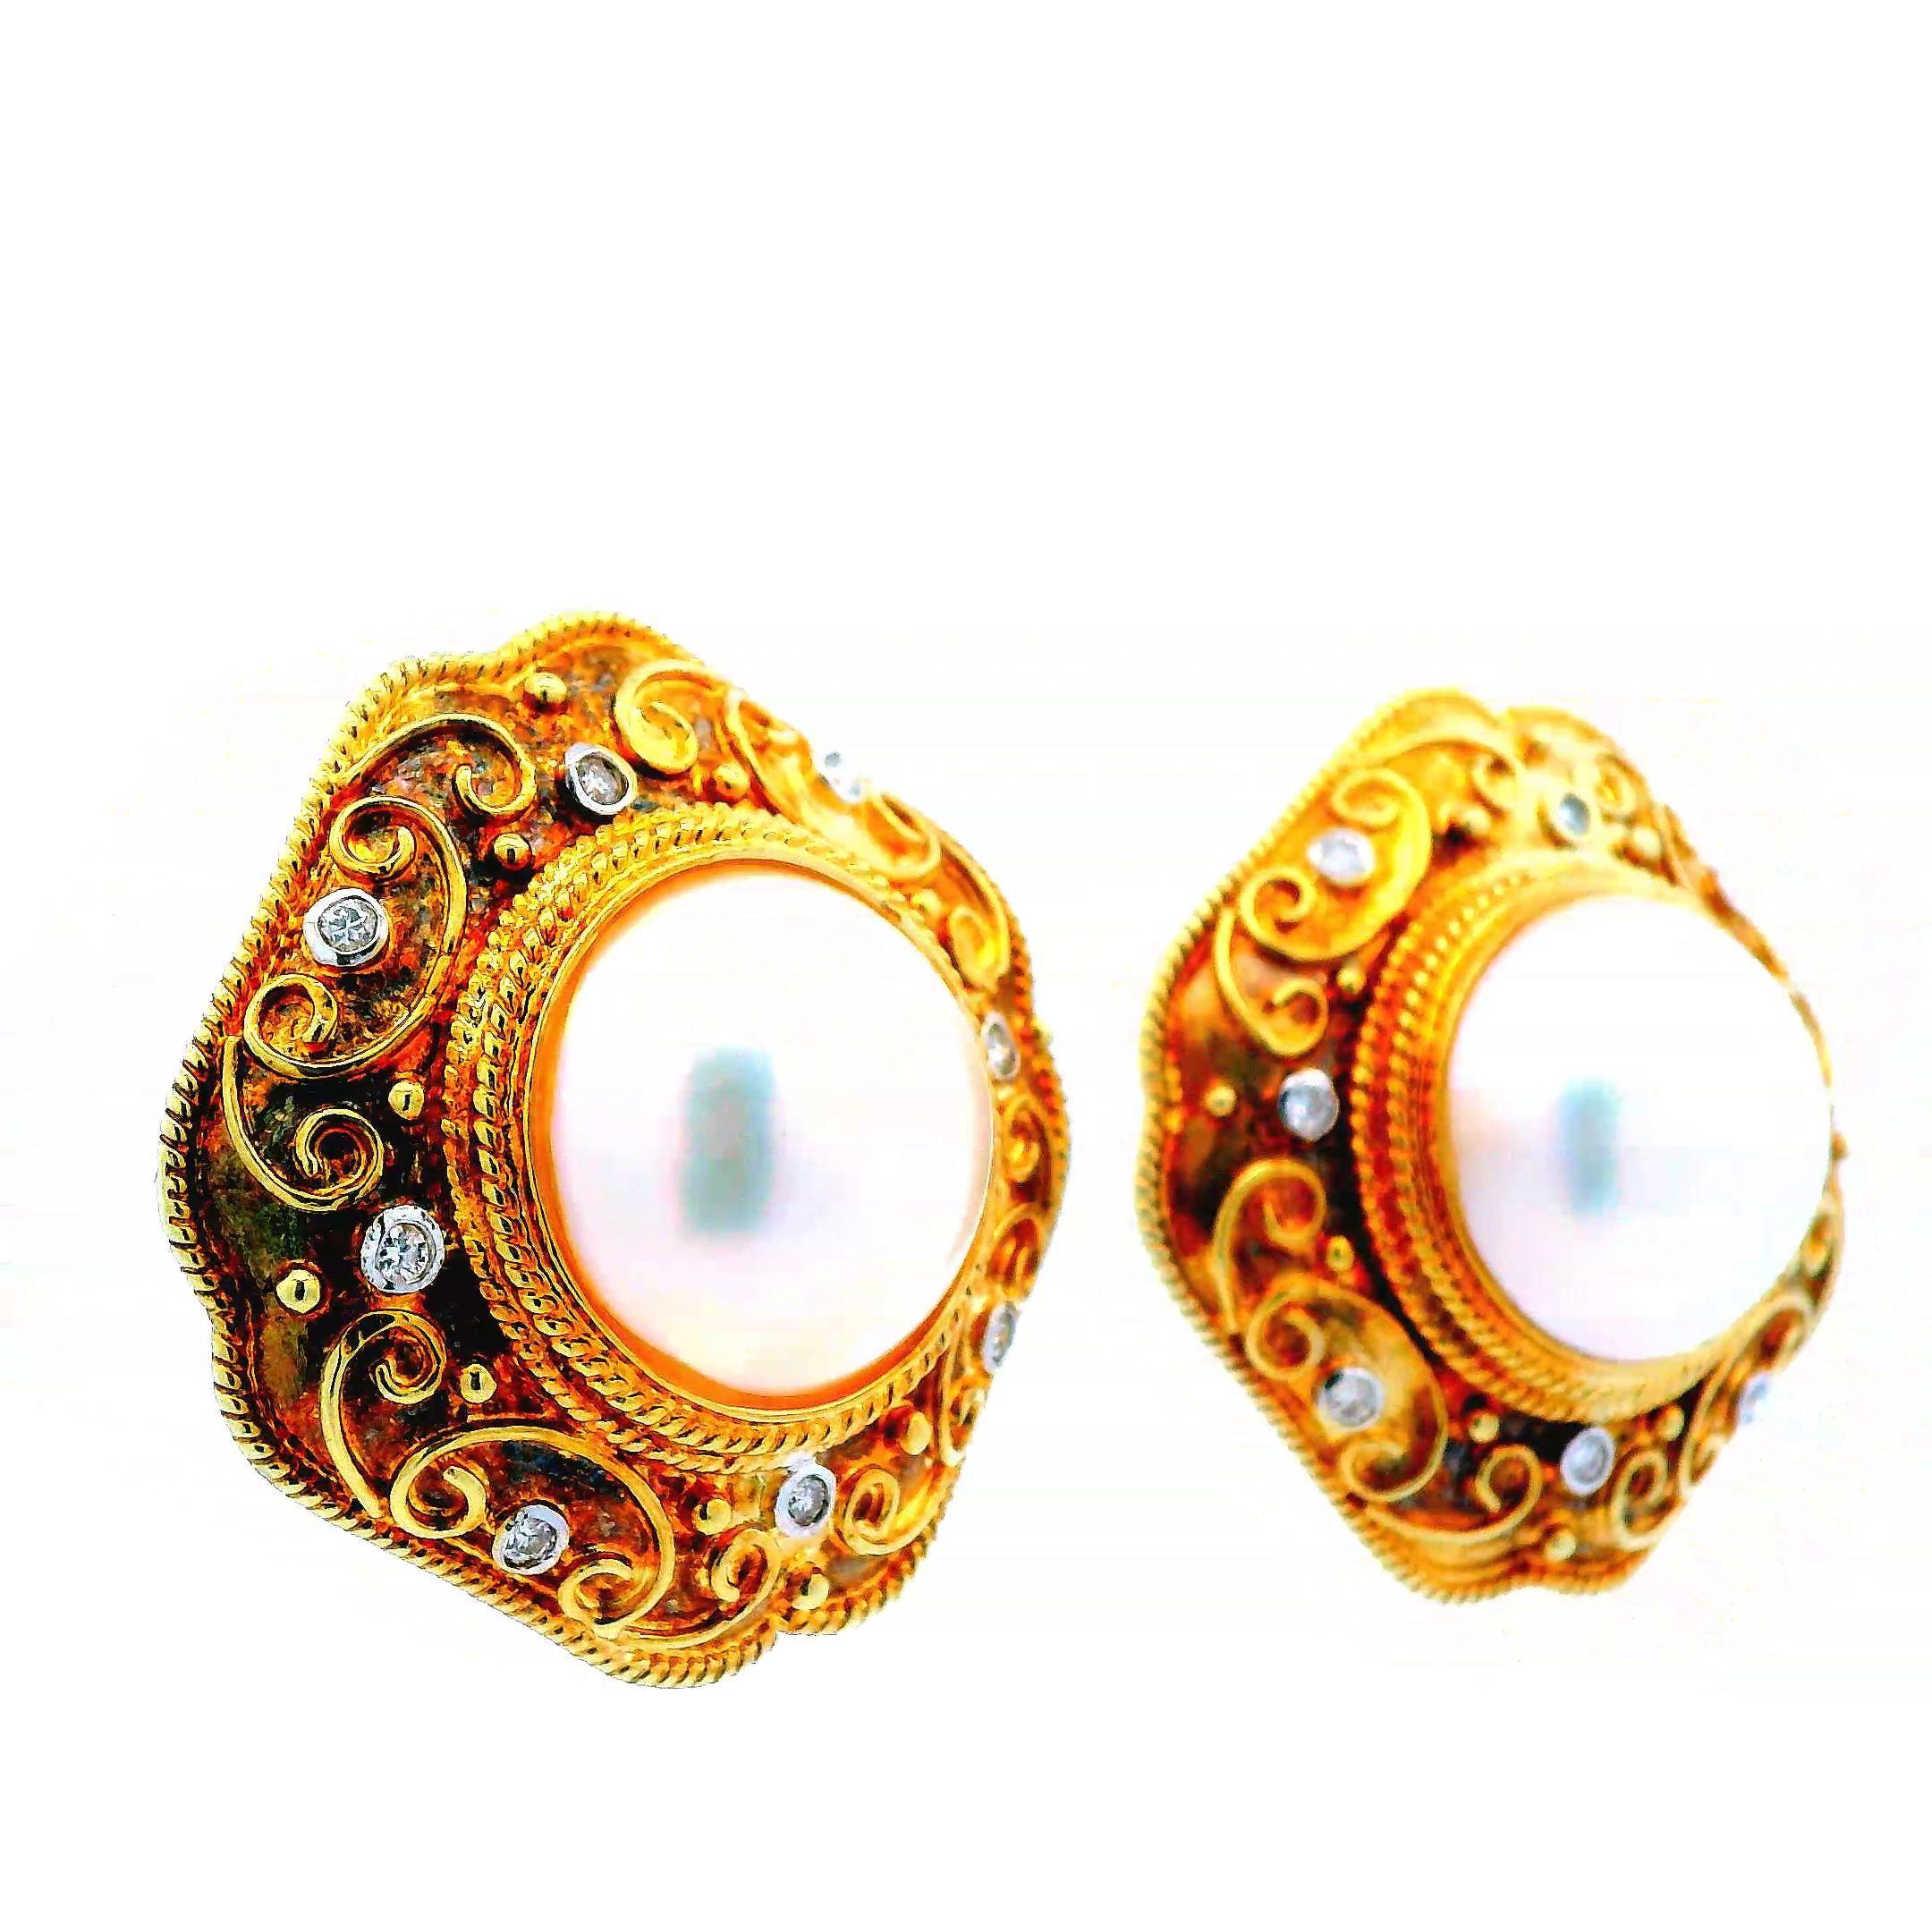 Dieses elegante Paar Ohrringe ist aus 14 Karat Gelbgold mit Diamanten und Mabe-Perlen gefertigt. Mabe-Perlen sind Halbperlen, die auf der Innenseite der Austernschale wachsen und eine einzigartige Kuppelform bilden. In der Mitte dieser Ohrringe